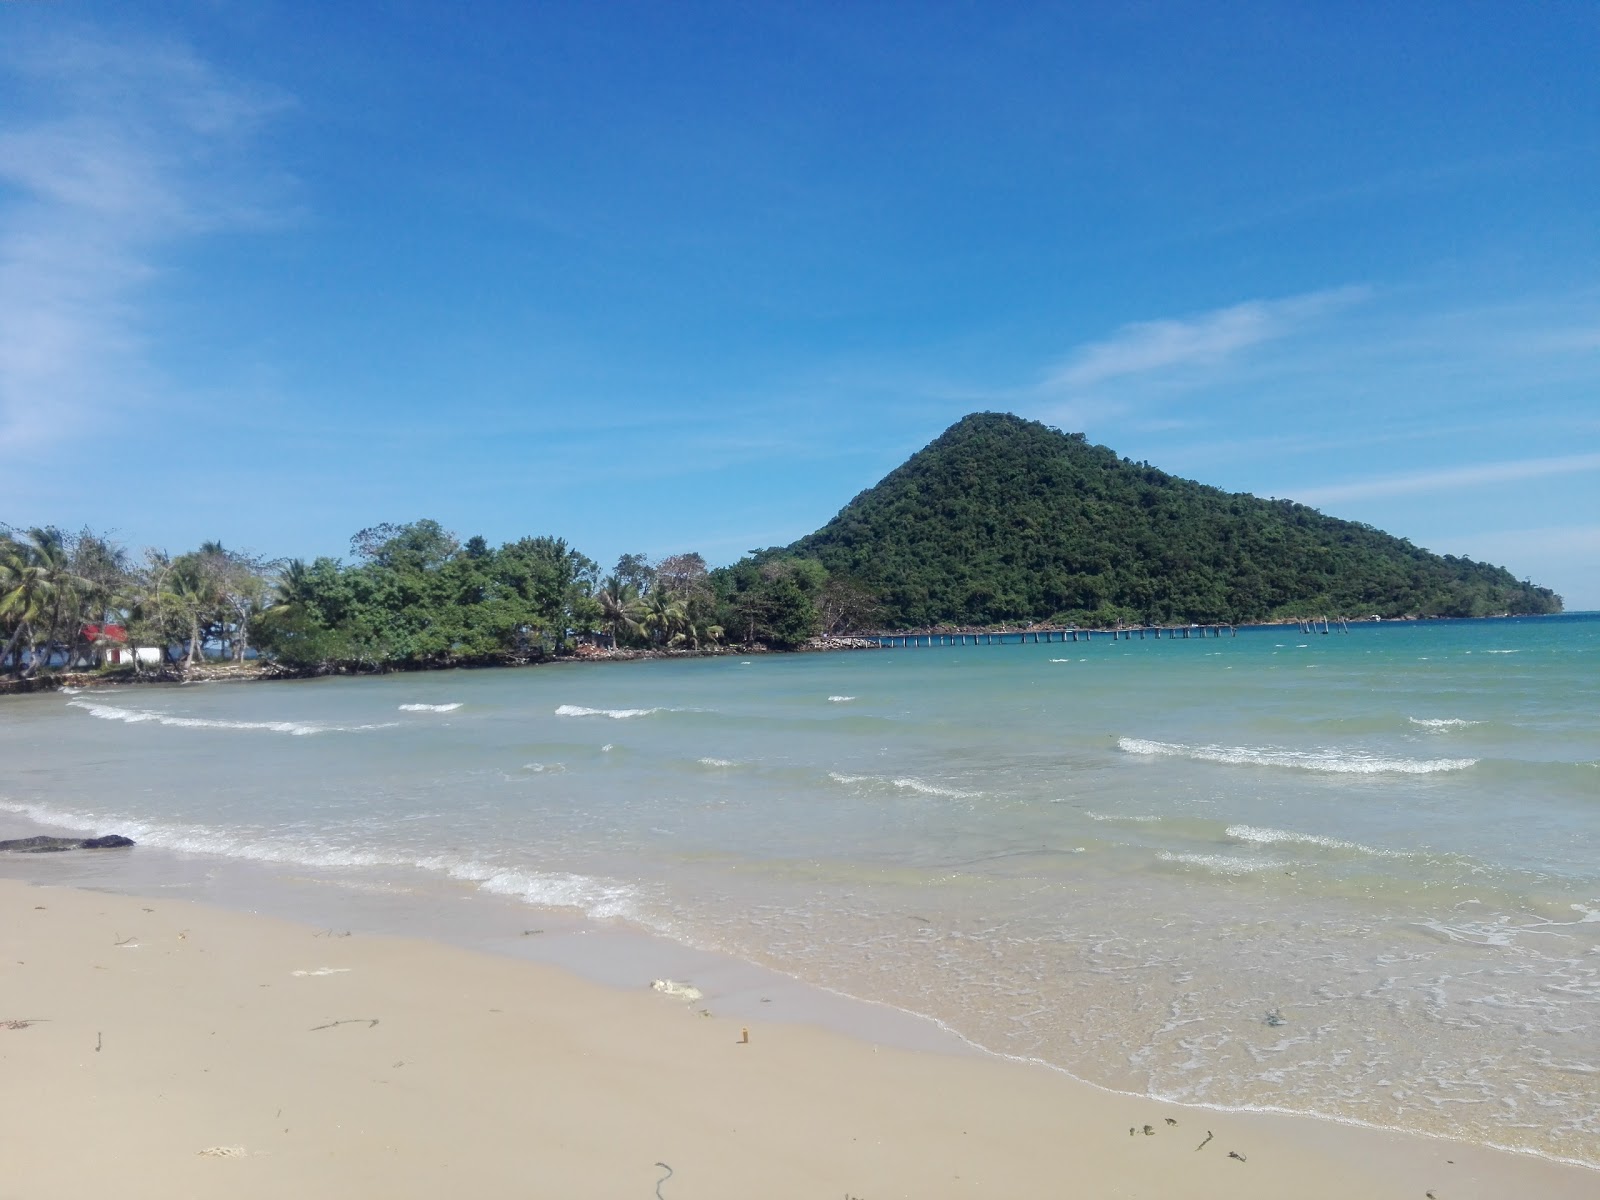 Fotografie cu M-Pai Bay cu o suprafață de nisip strălucitor